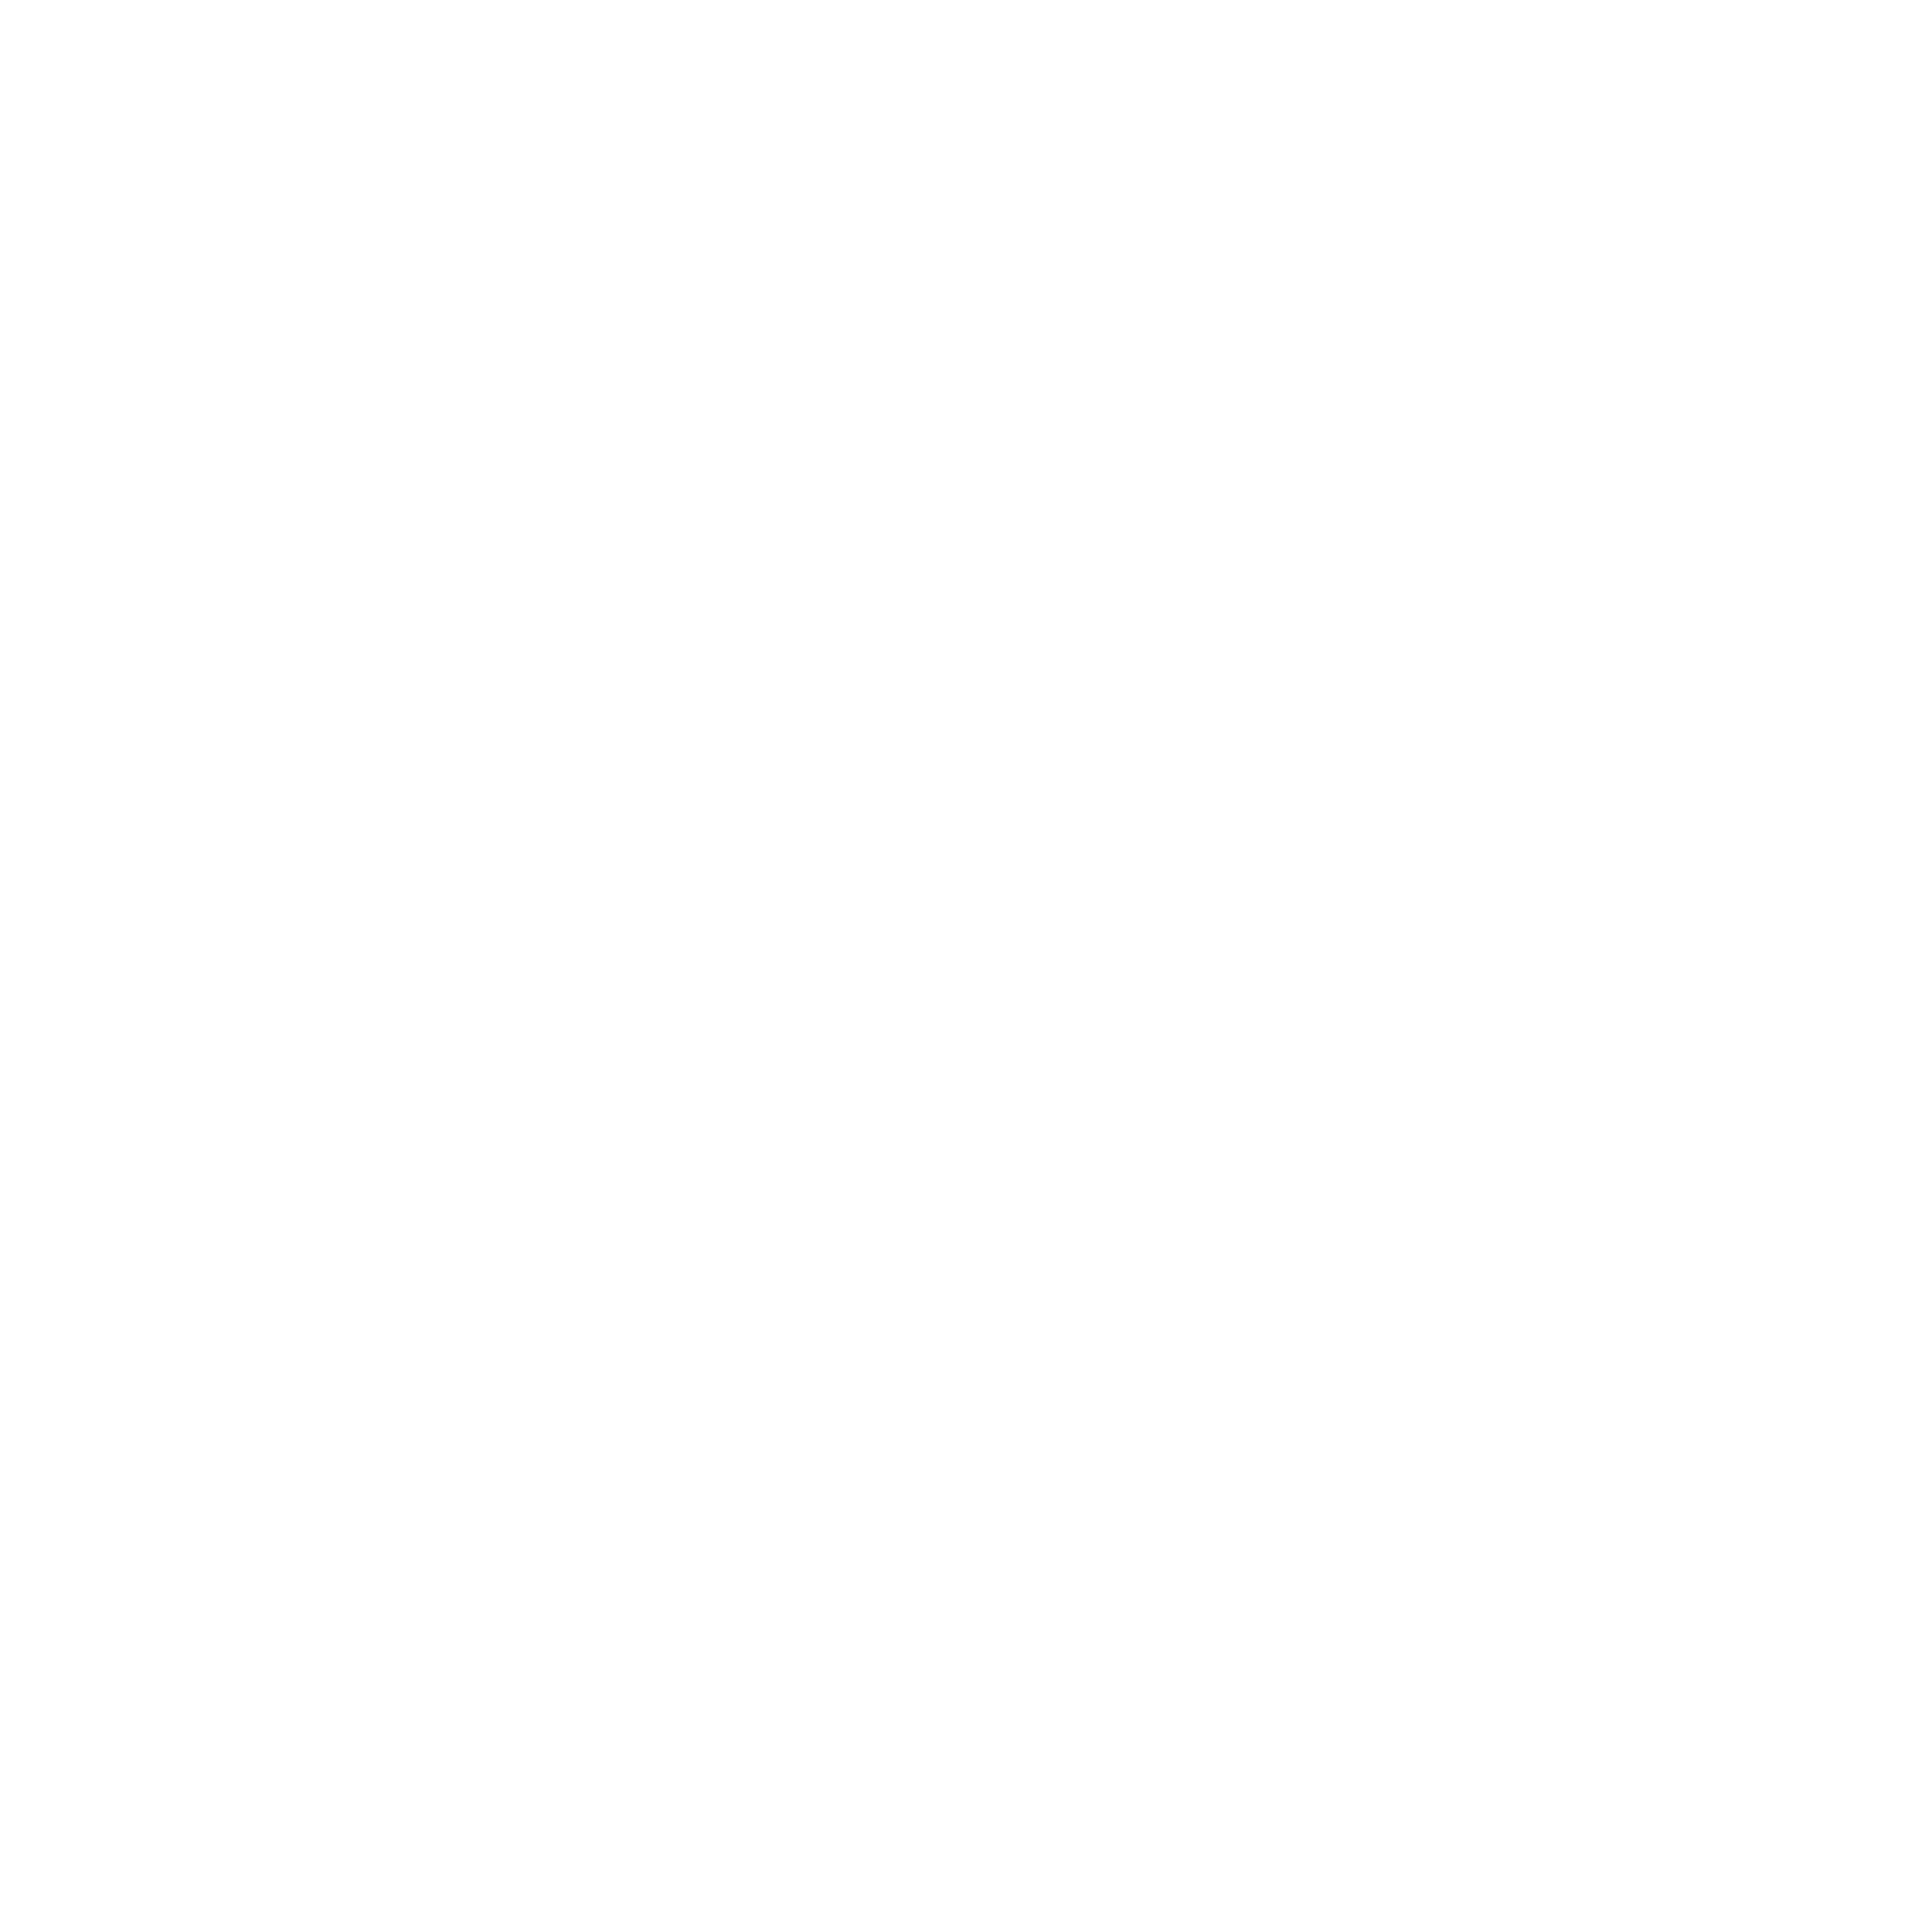 Attention SL Magazine